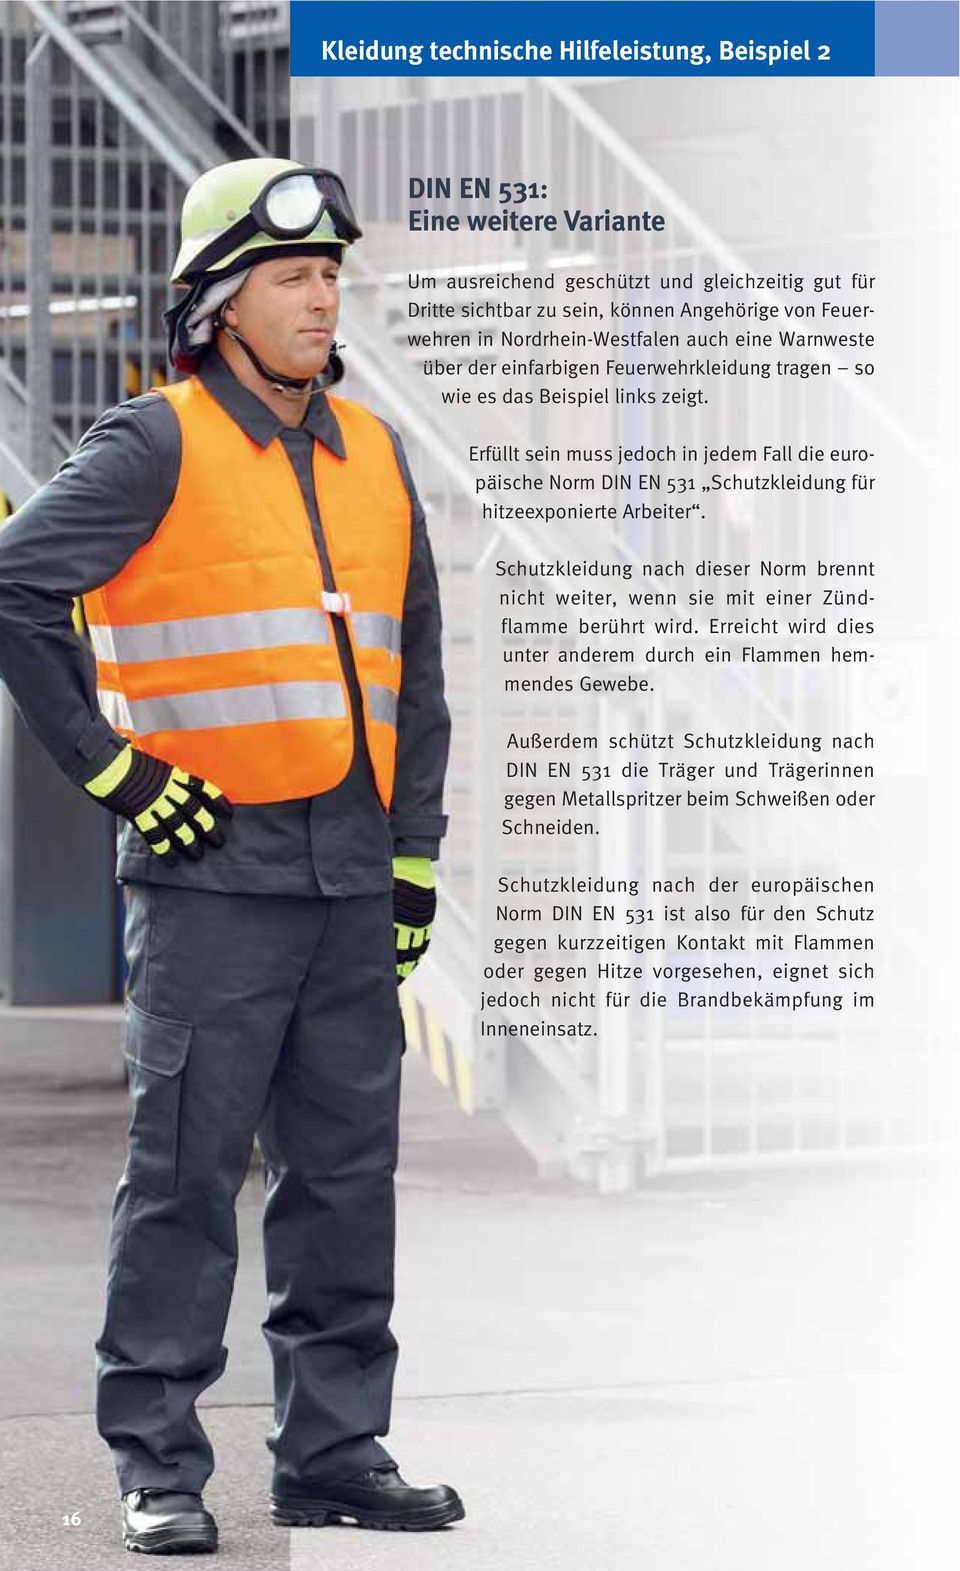 Erfüllt sein muss jedoch in jedem Fall die europäische Norm DIN EN 531 Schutzkleidung für hitzeexponierte Arbeiter.